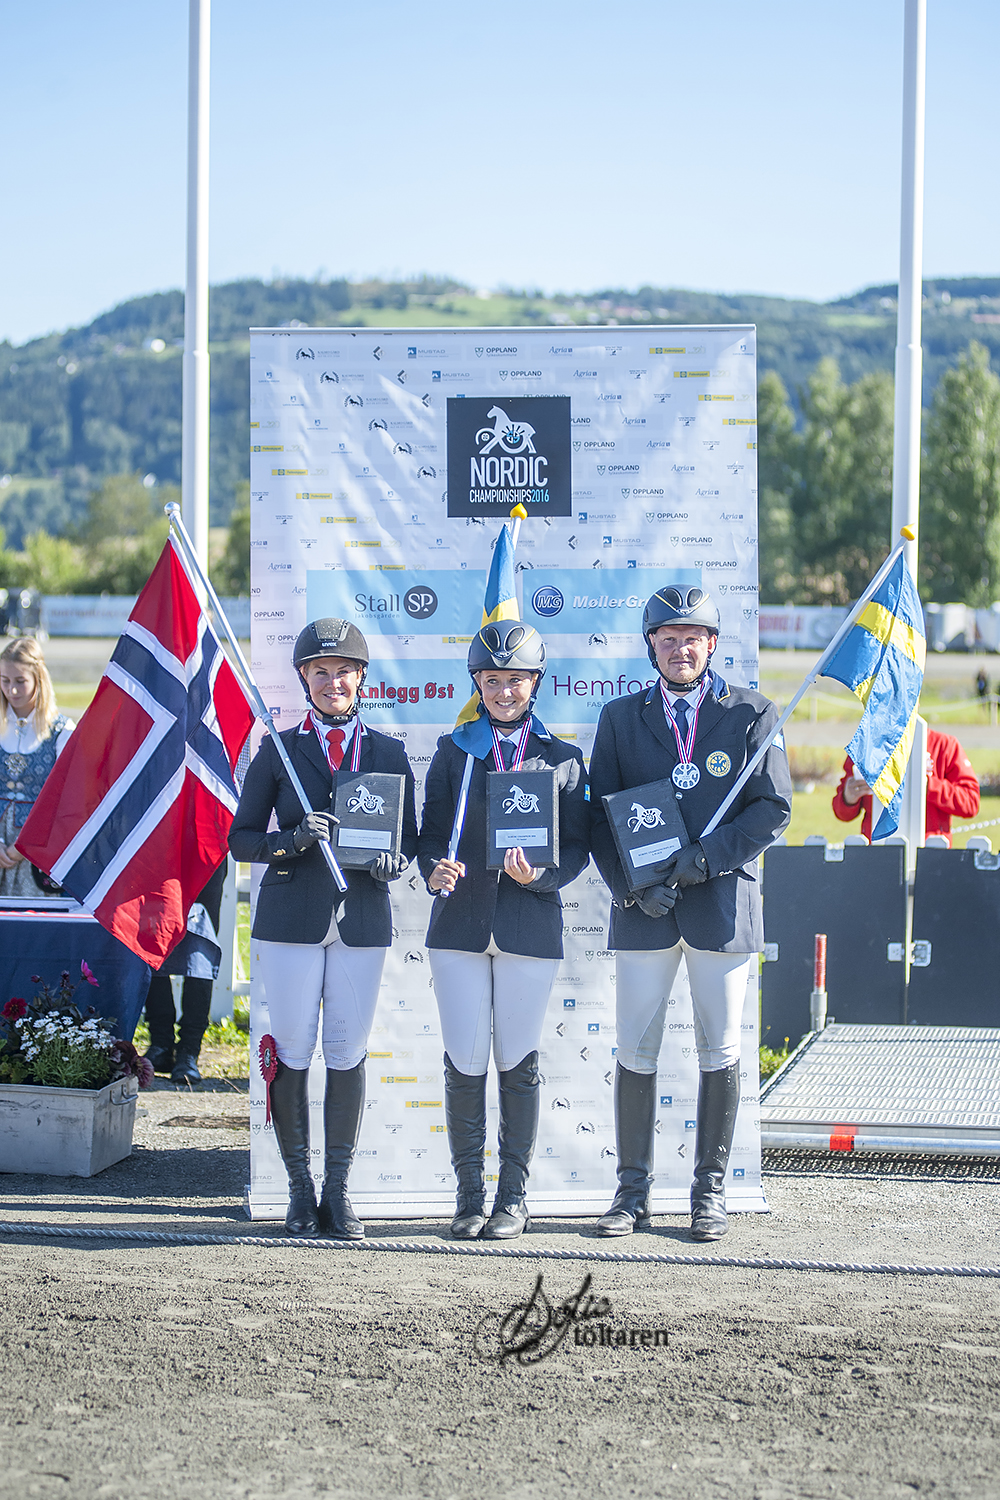 Medaljörerna! Foto: Sofie Lahtinen Carlsson